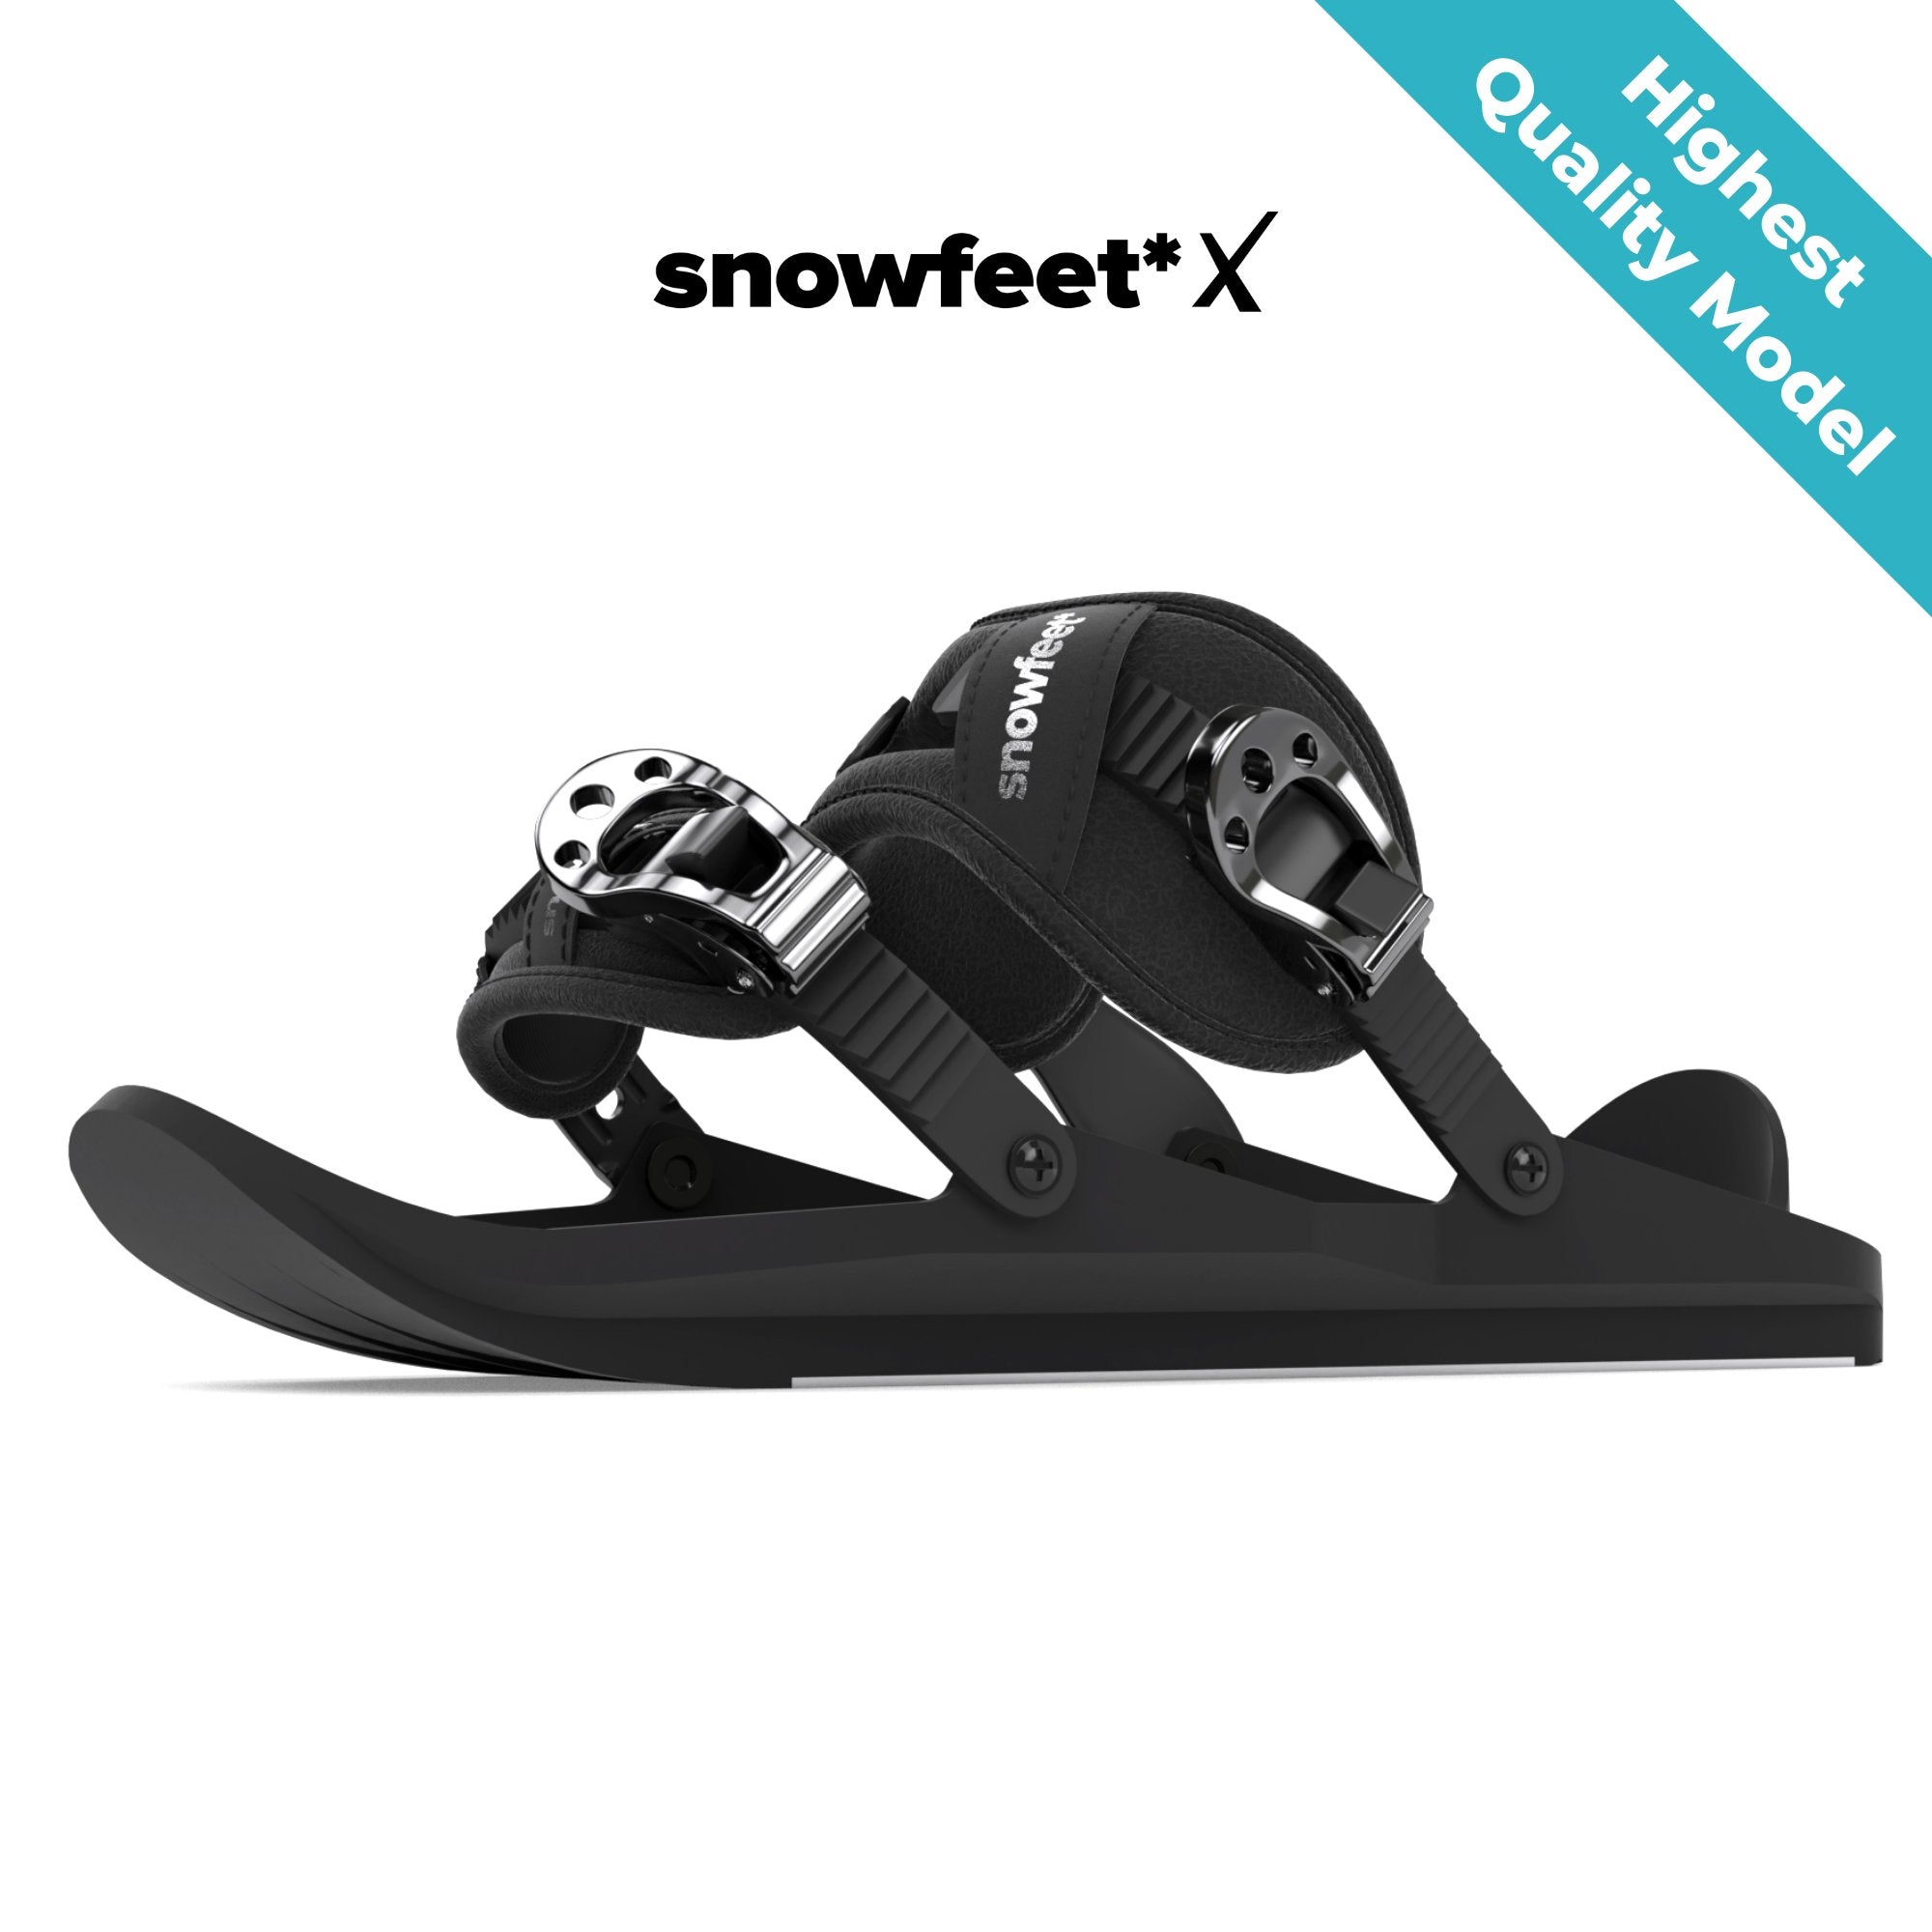 Snowfeet* X | Mini Ski Skates - snowfeet*